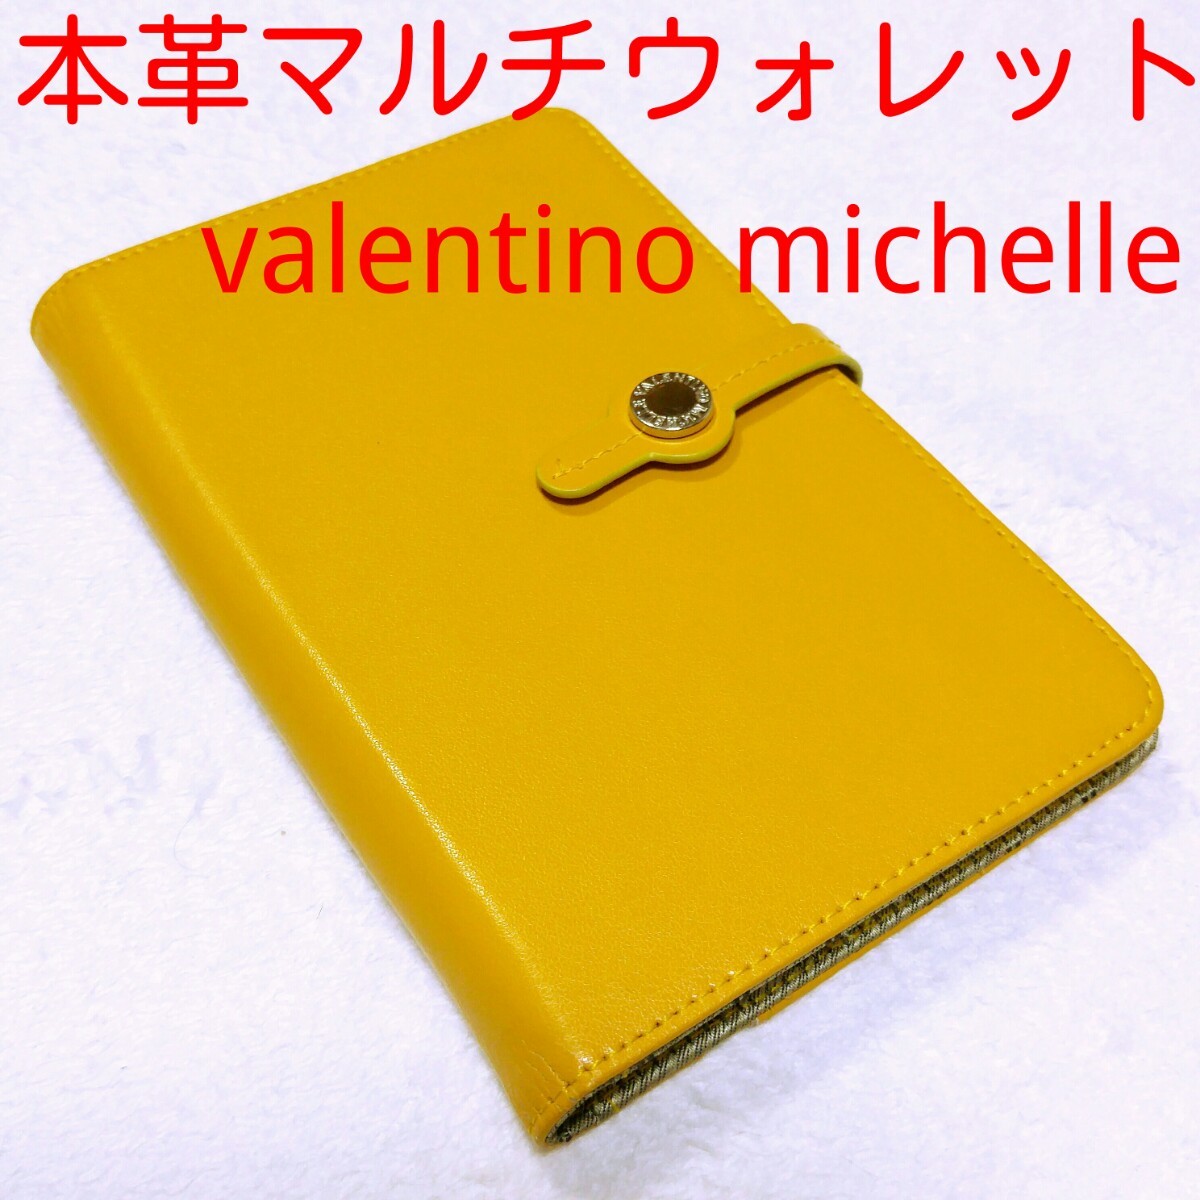 本革多機能財布 valentino michelle 母子手帳 マルチウォレット